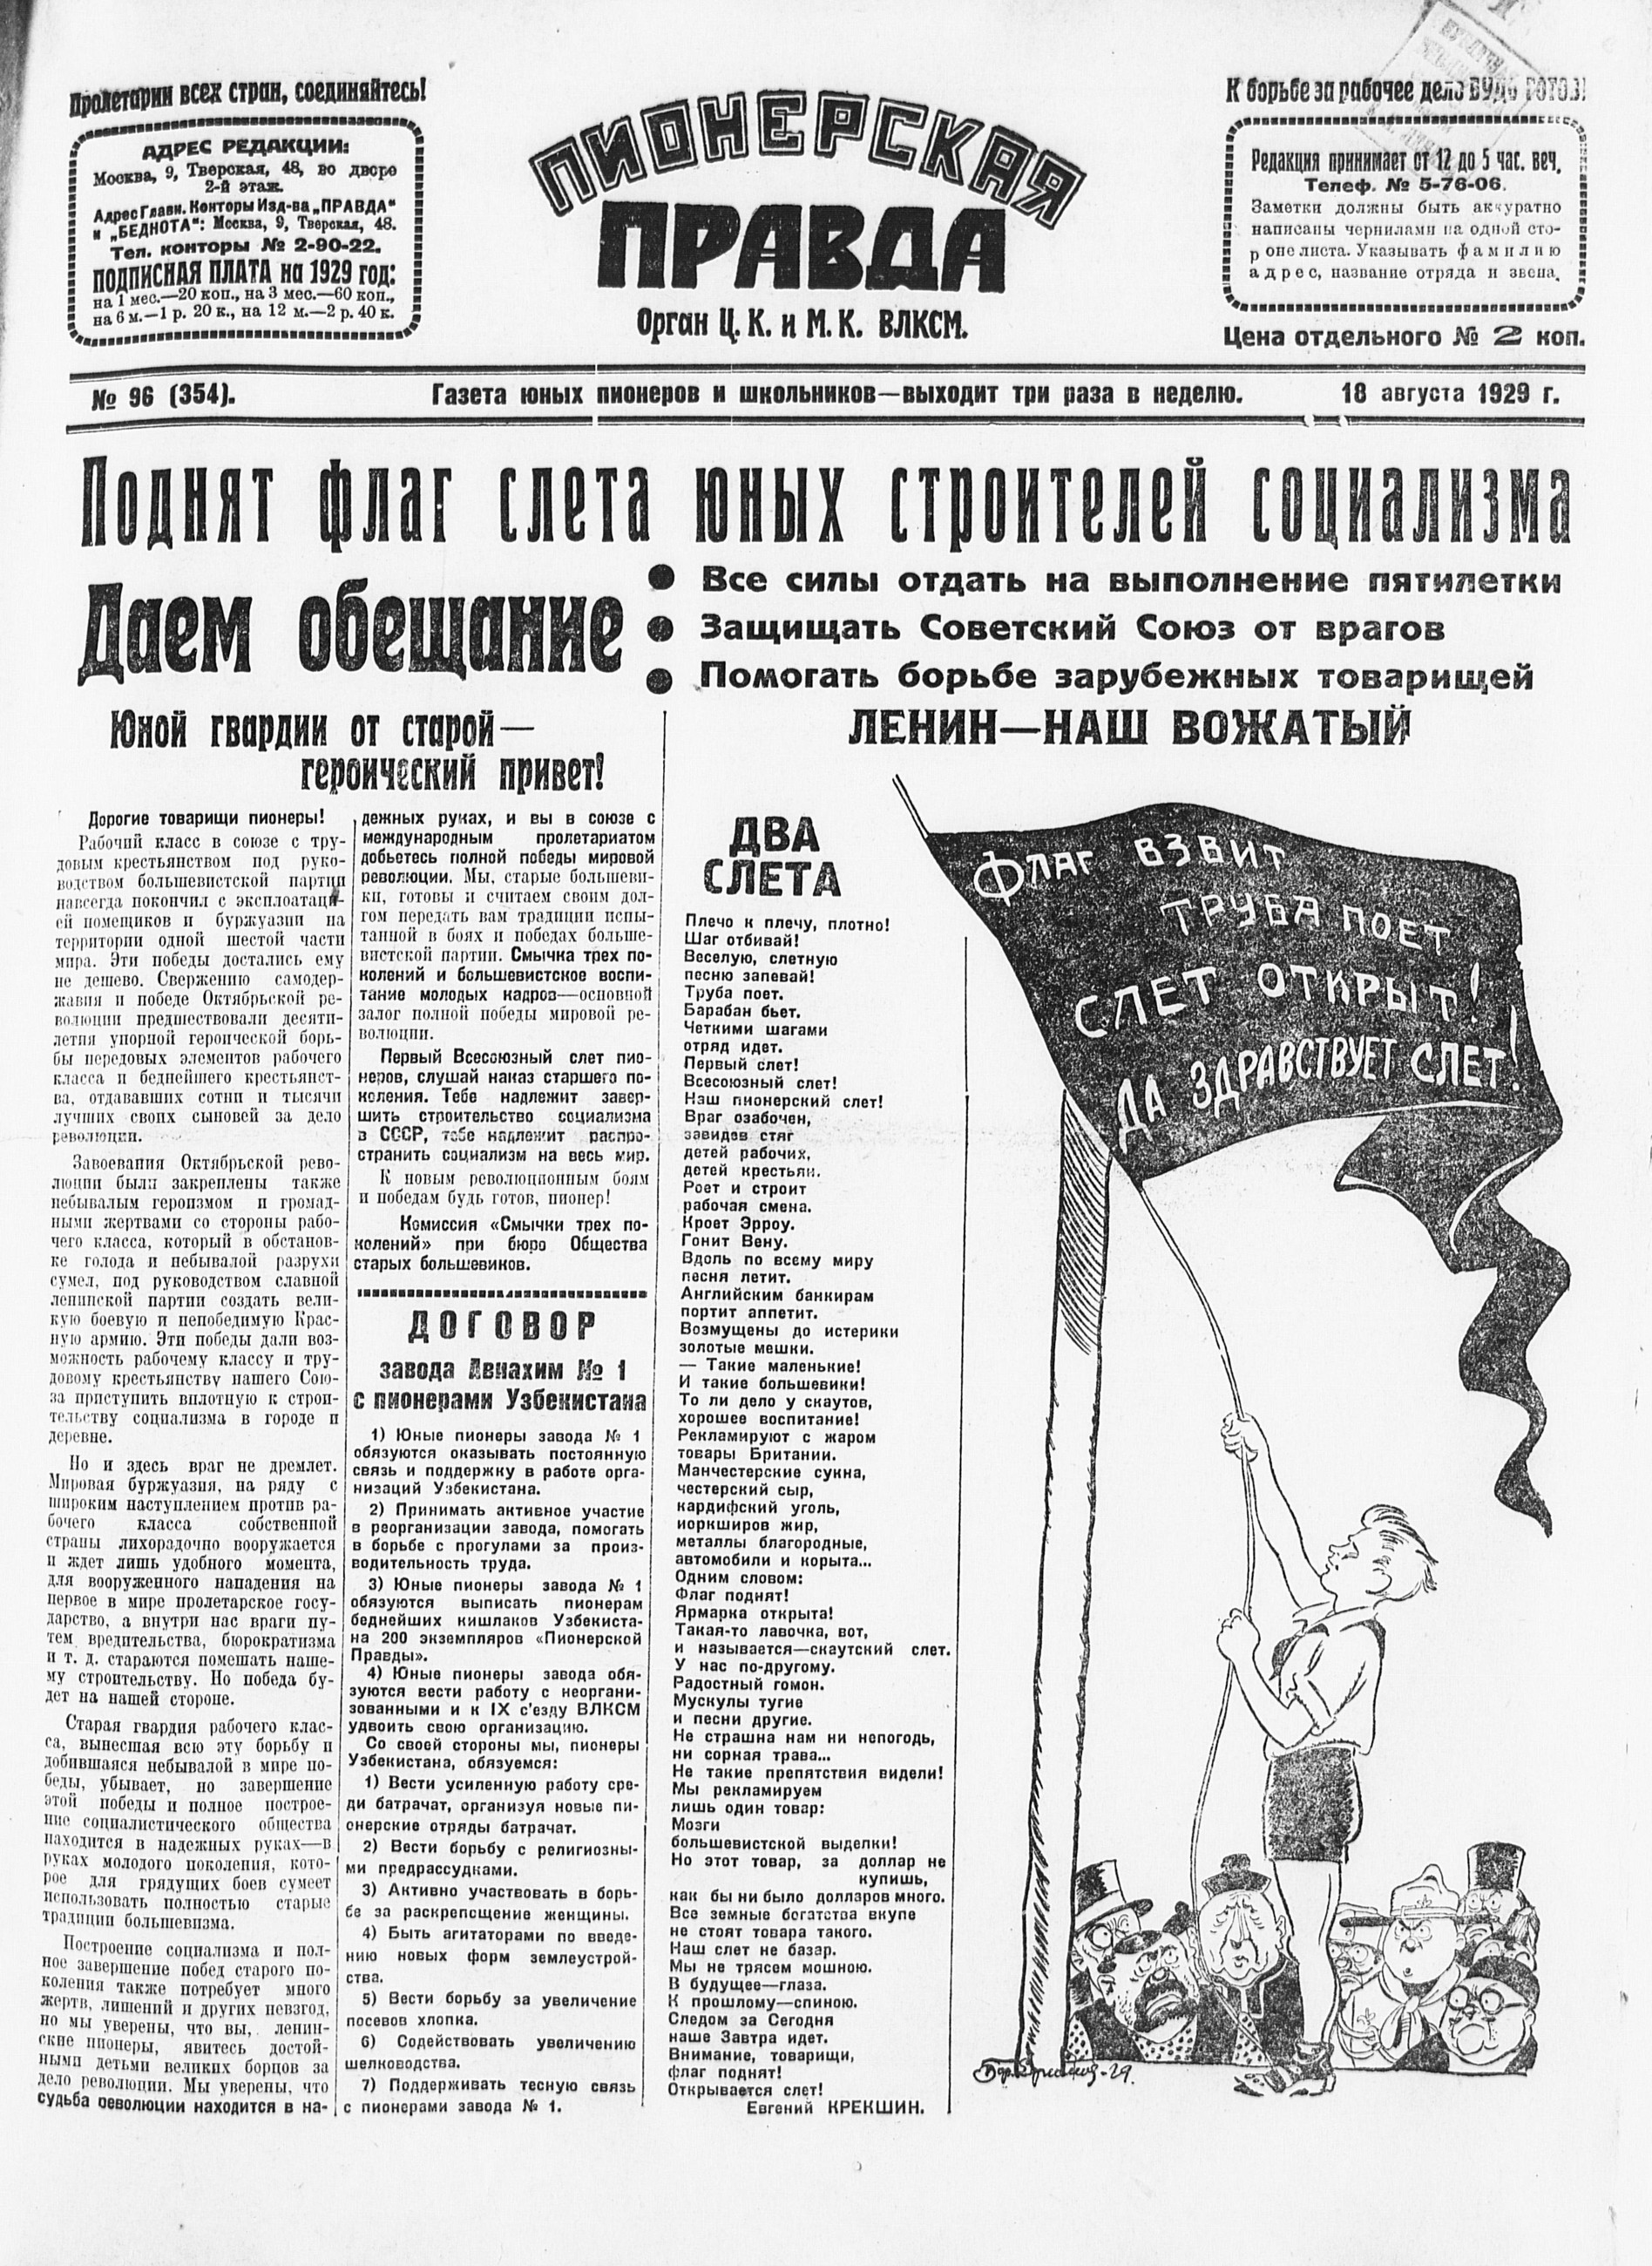 Пионерская правда. 1929. № 096 (354): Газета юных пионеров и школьников - выходит три раза в неделю - 1929